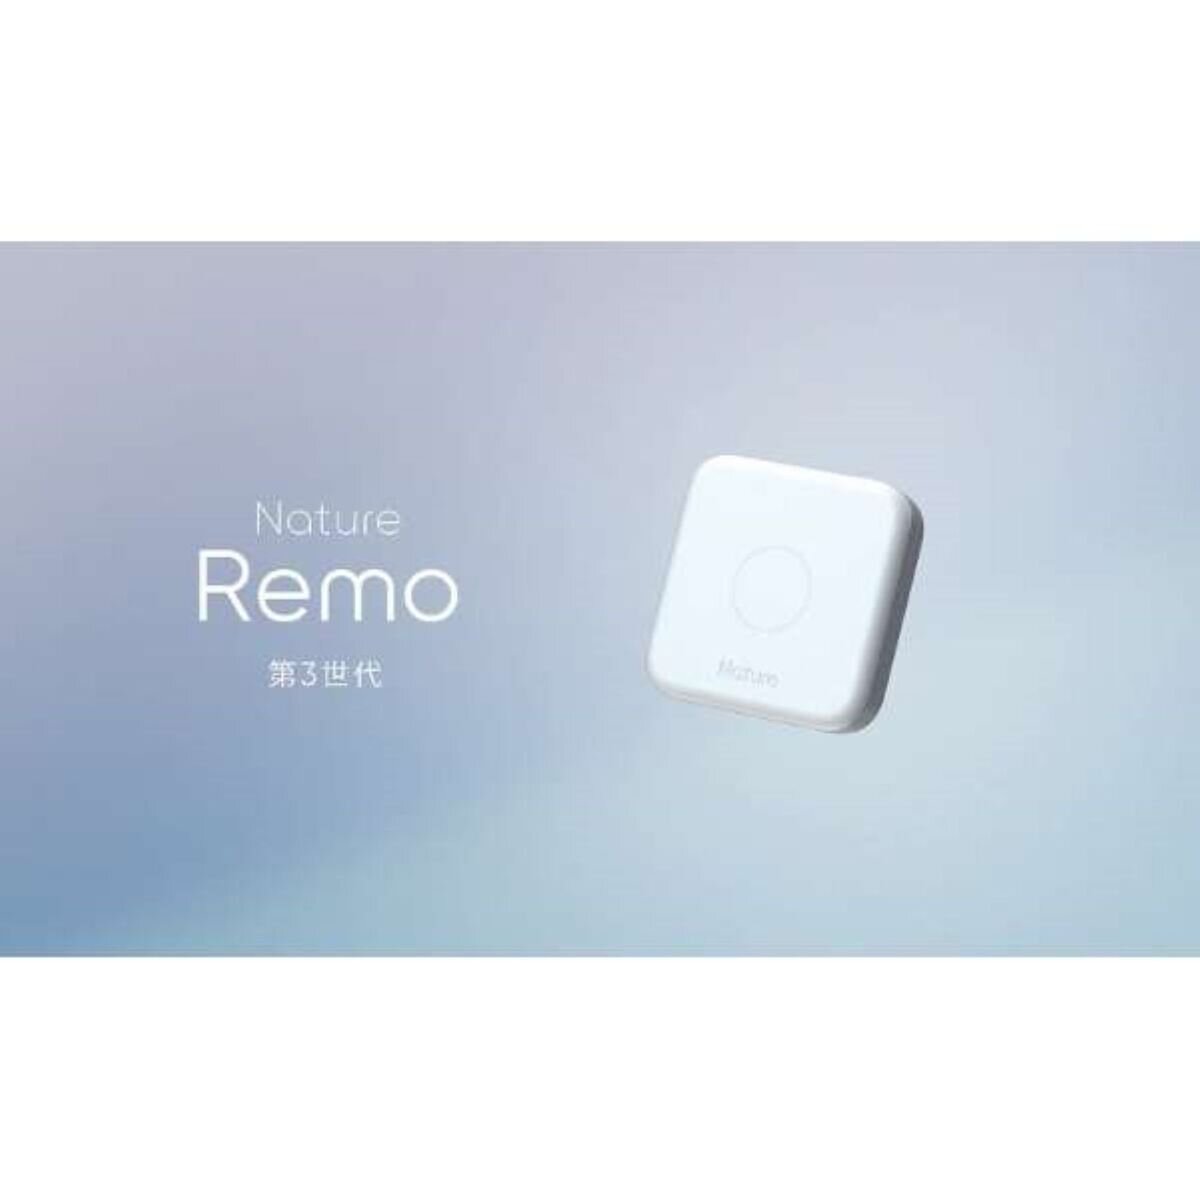 ネイチャーリモ 3 REMO-1W3 | Costco Japan